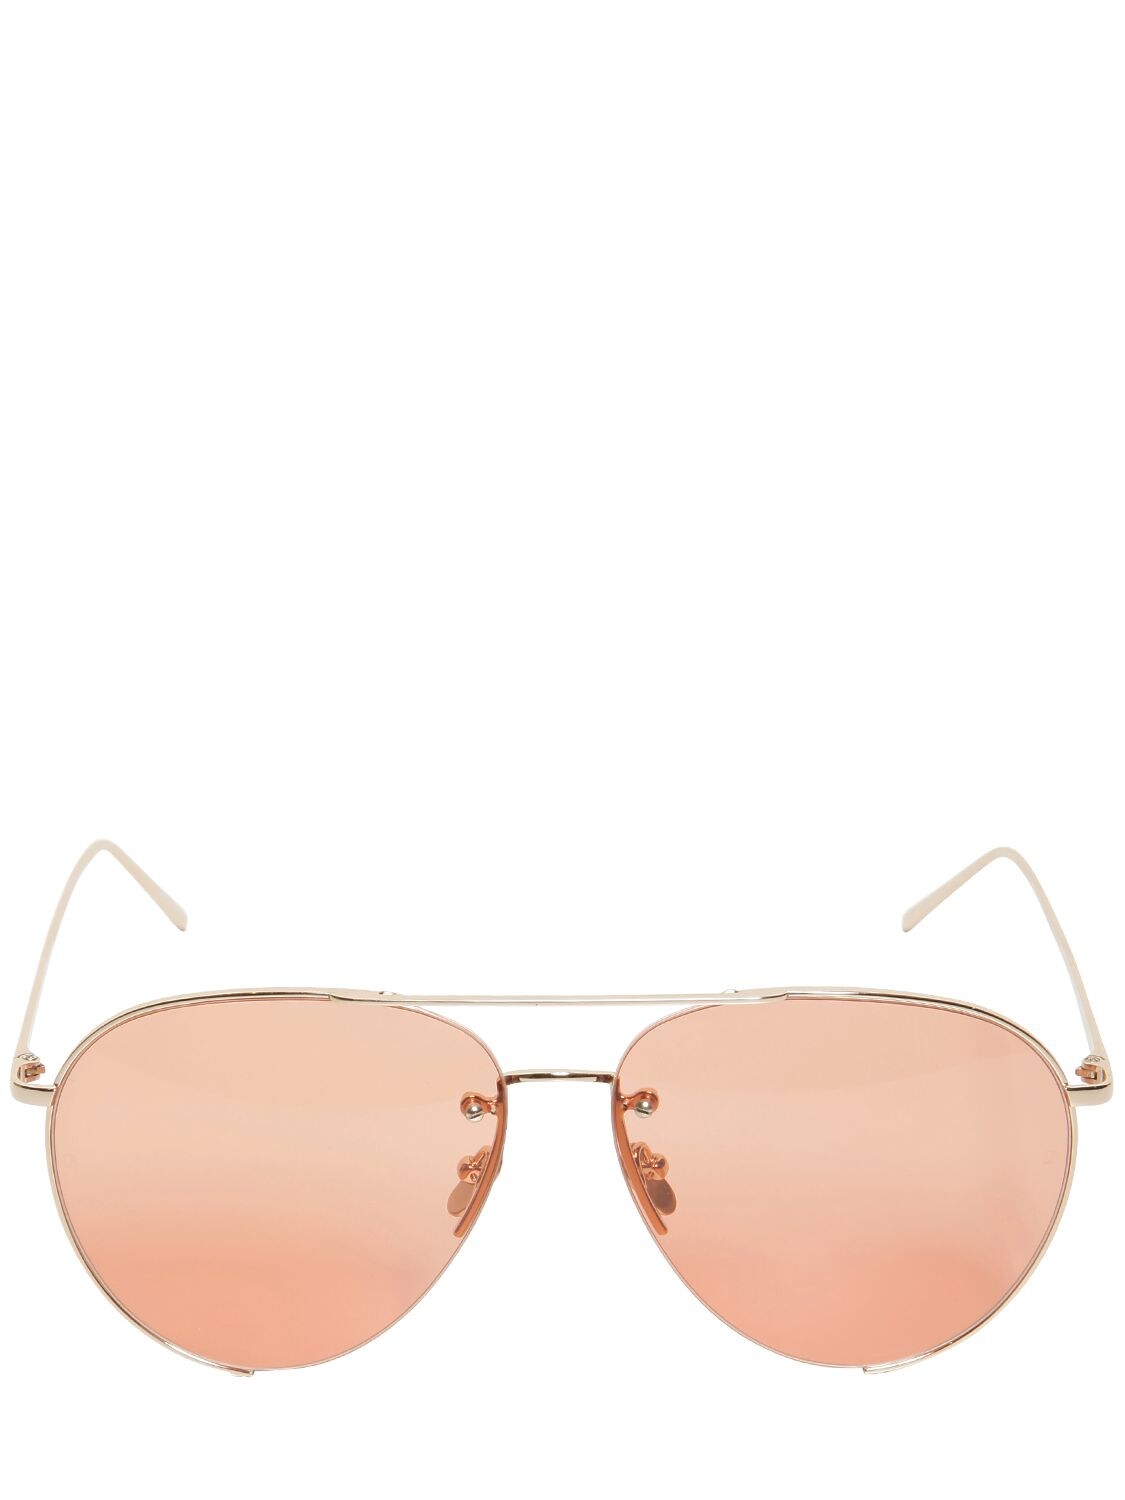 Linda Farrow 624 C5 Aviator Sunglasses In Pink